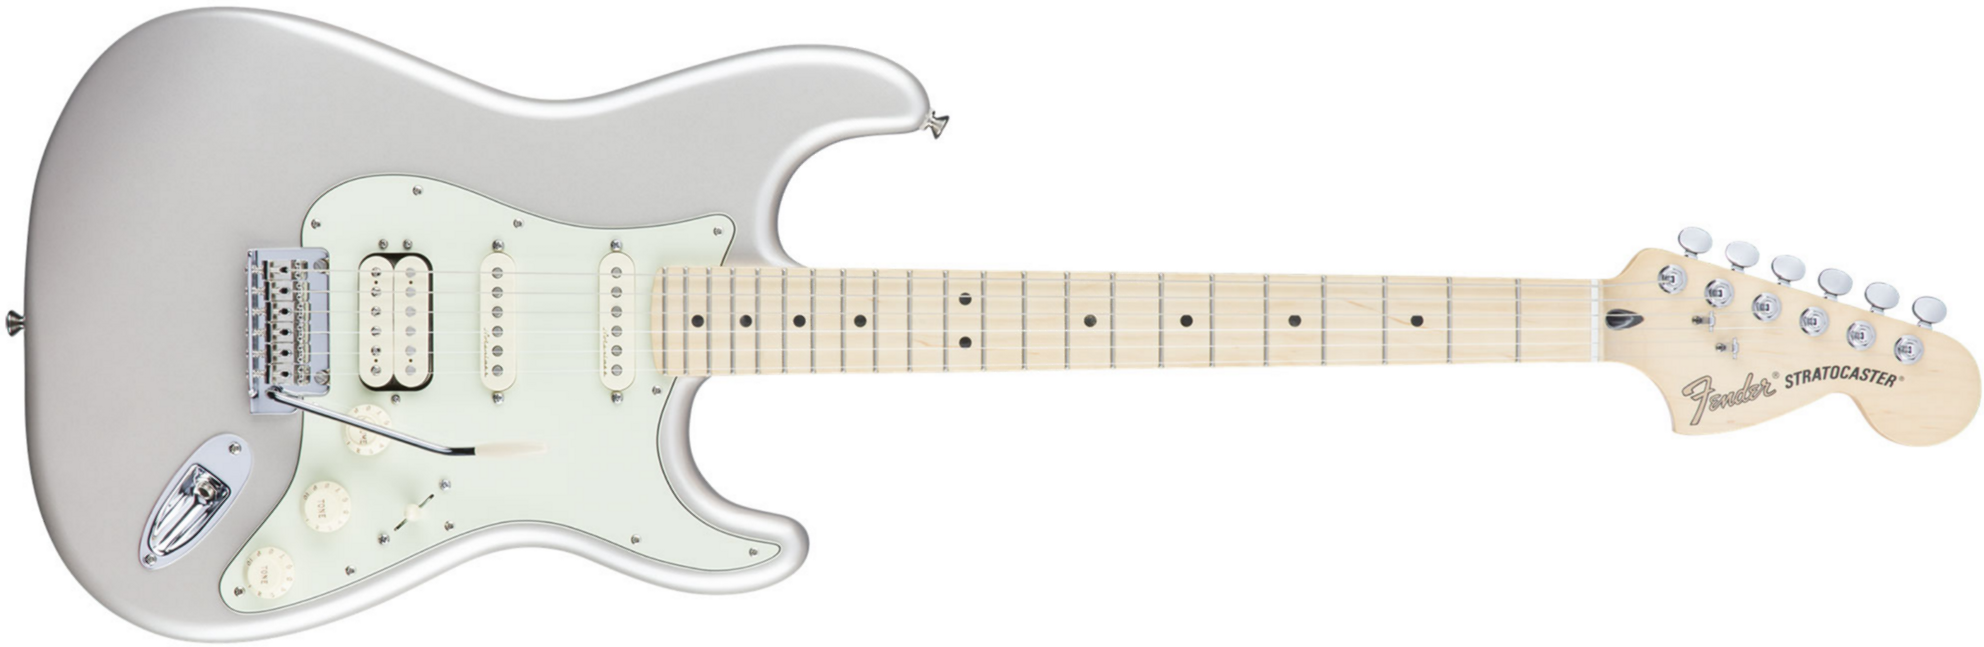 Fender Strat Deluxe Hss Mex Mn 2016 - Blizzard - Elektrische gitaar in Str-vorm - Main picture